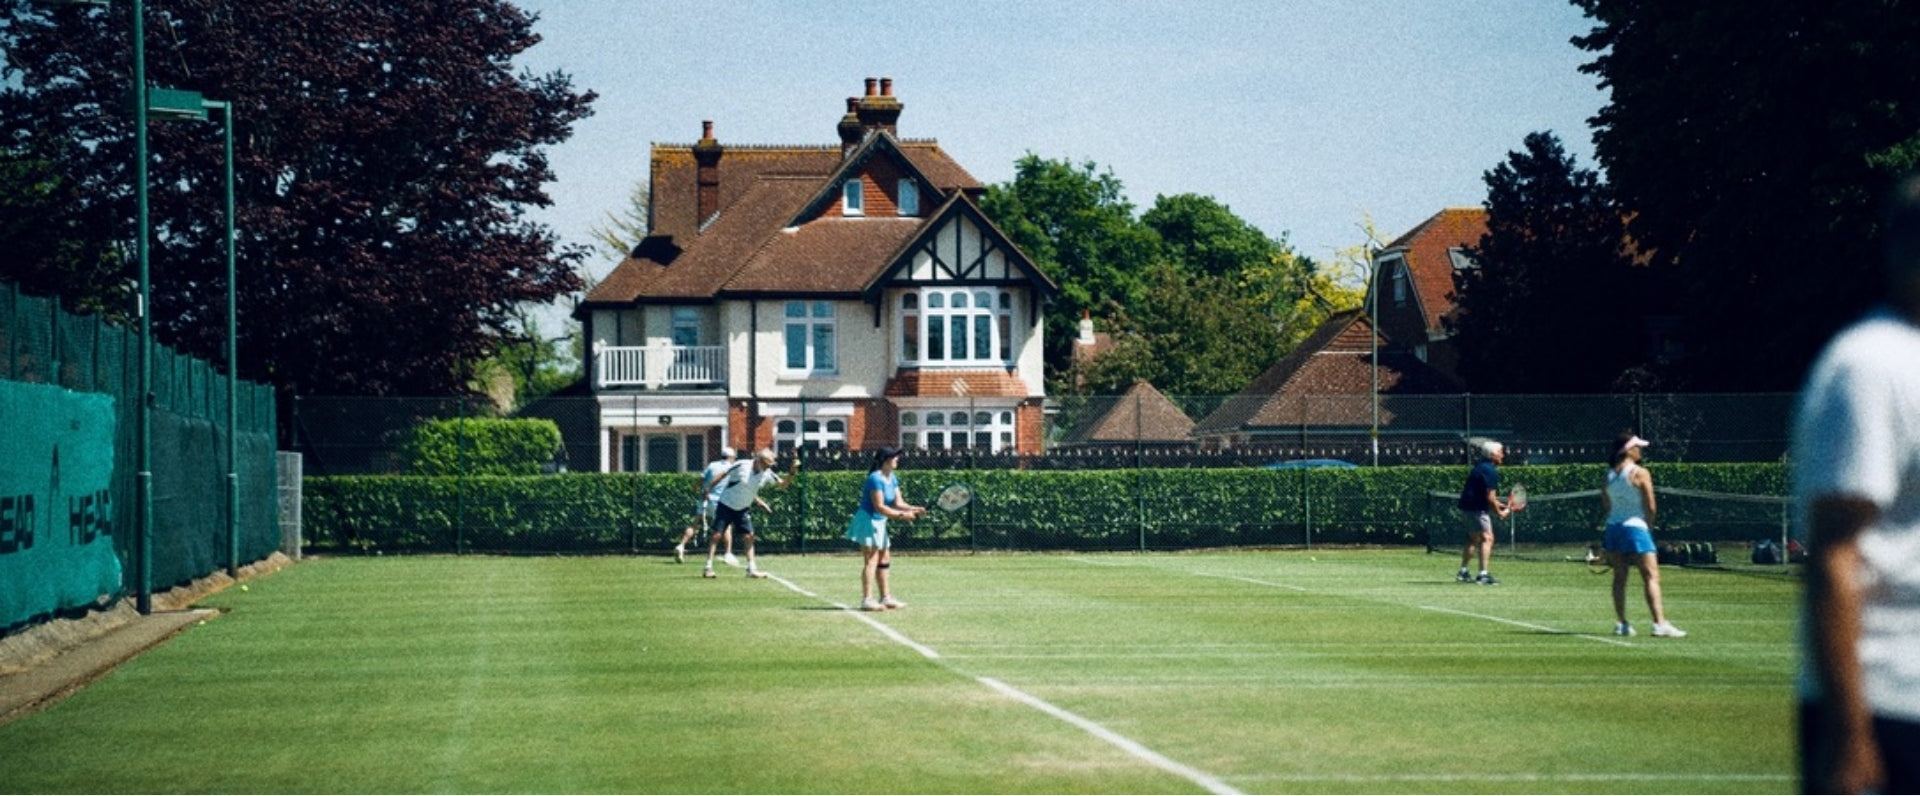 Menschen spielen auf Grasplätzen Tennis. Im Hintergrund ein Fachwerkhaus.